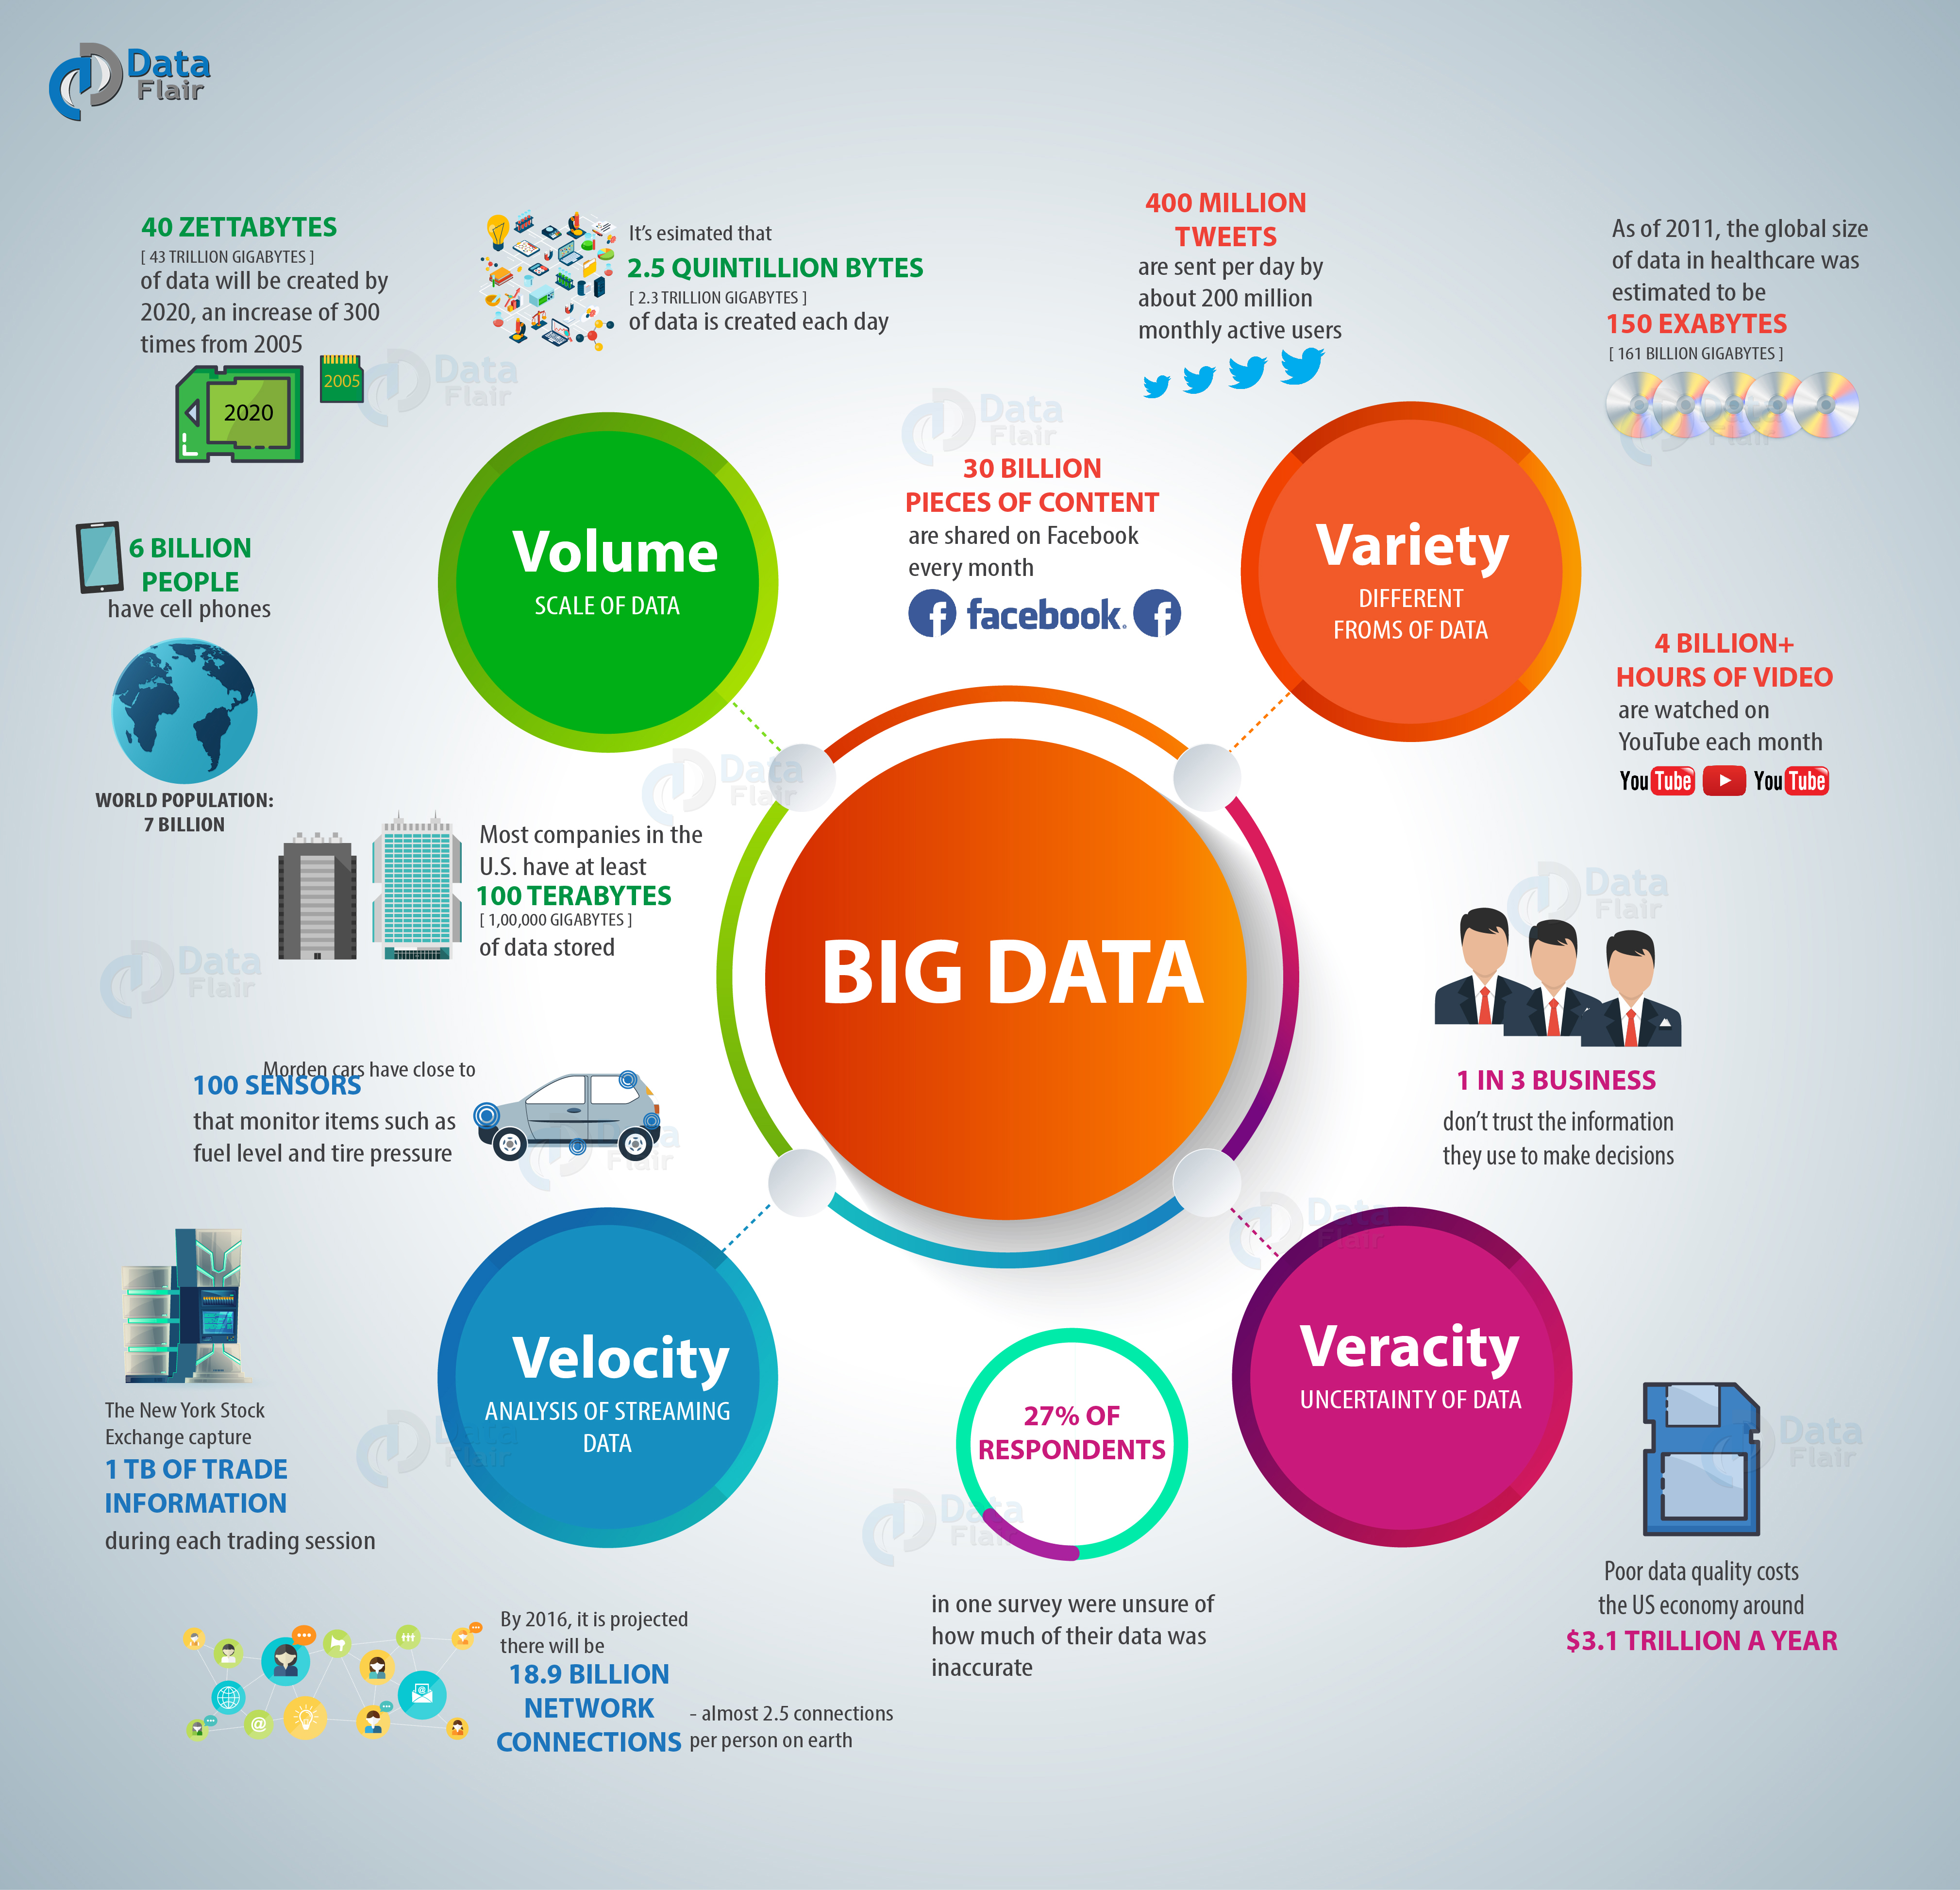 Big Data and 4 Vs